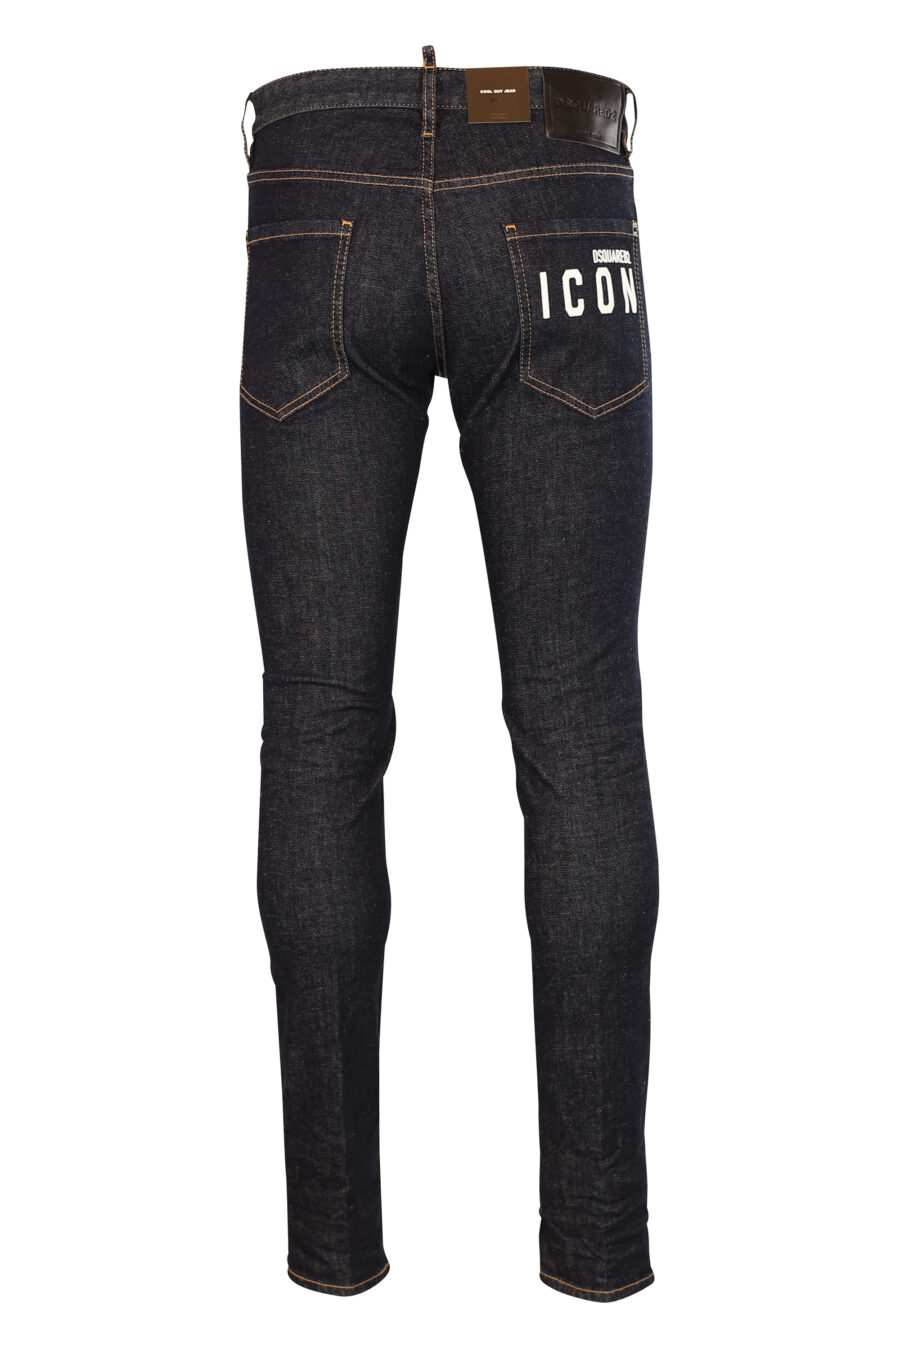 Jeans "B-Icon cool guy" bleu foncé - 8052134107485 3